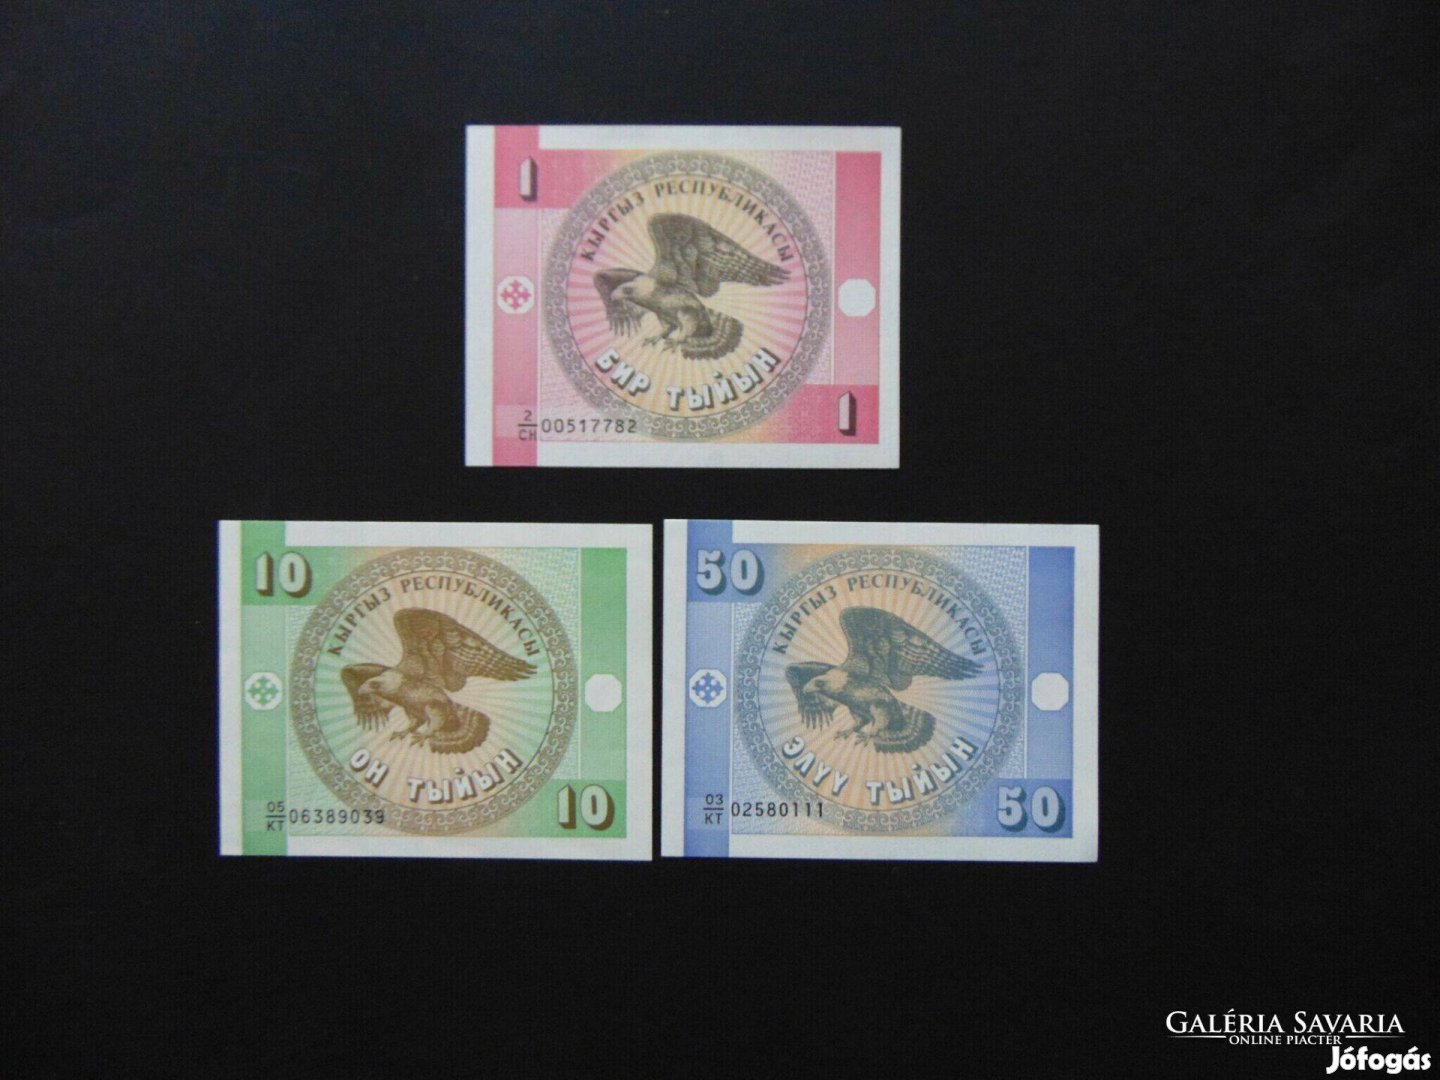 Kirgizisztán 1 - 10 -50 szom LOT ! Hajtatlan bankjegyek